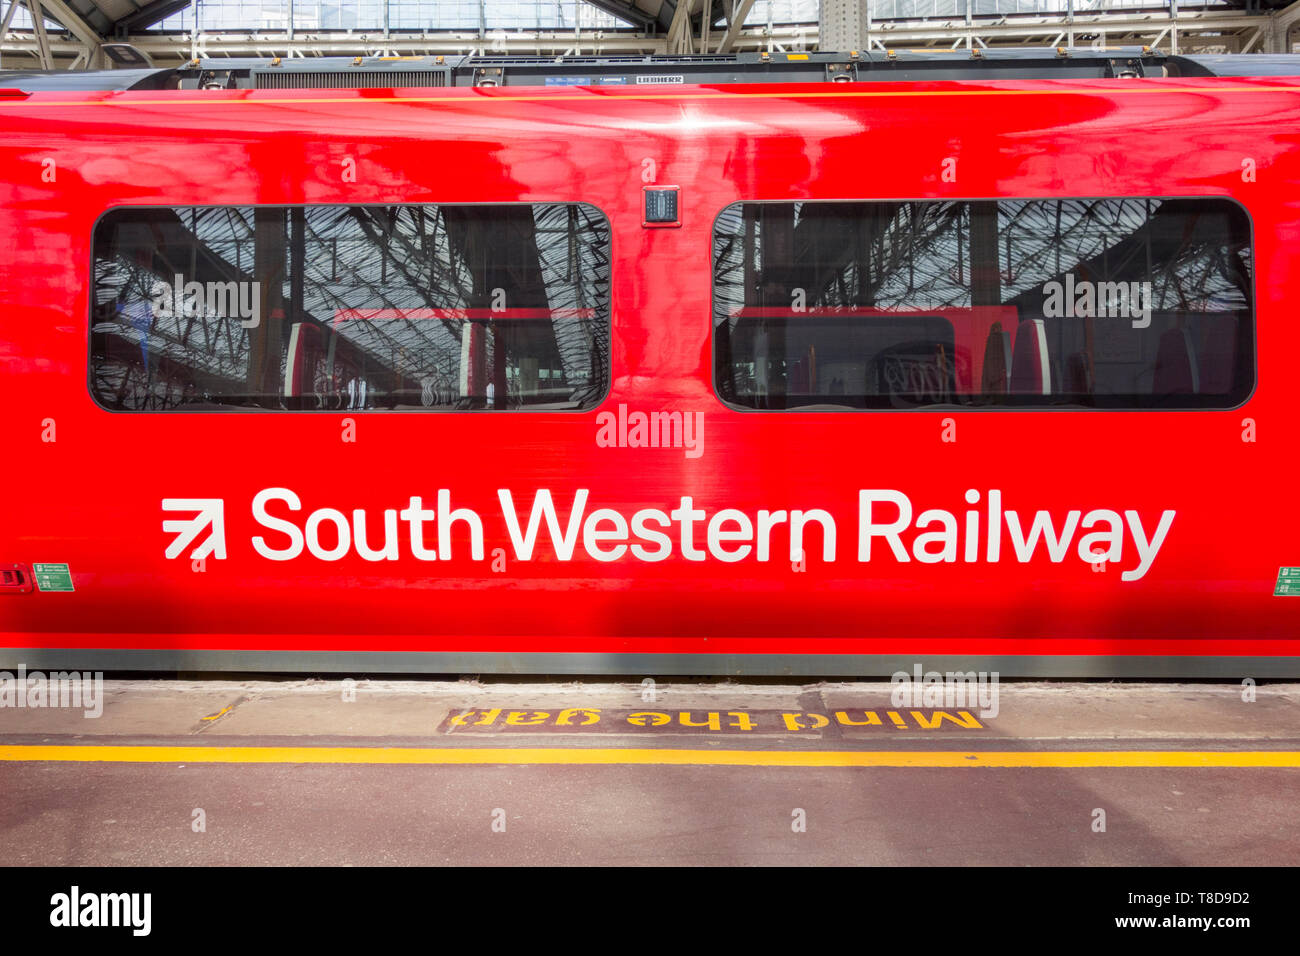 Le sud-ouest de wagons de chemin de fer et à couleurs London Waterloo, UK Banque D'Images